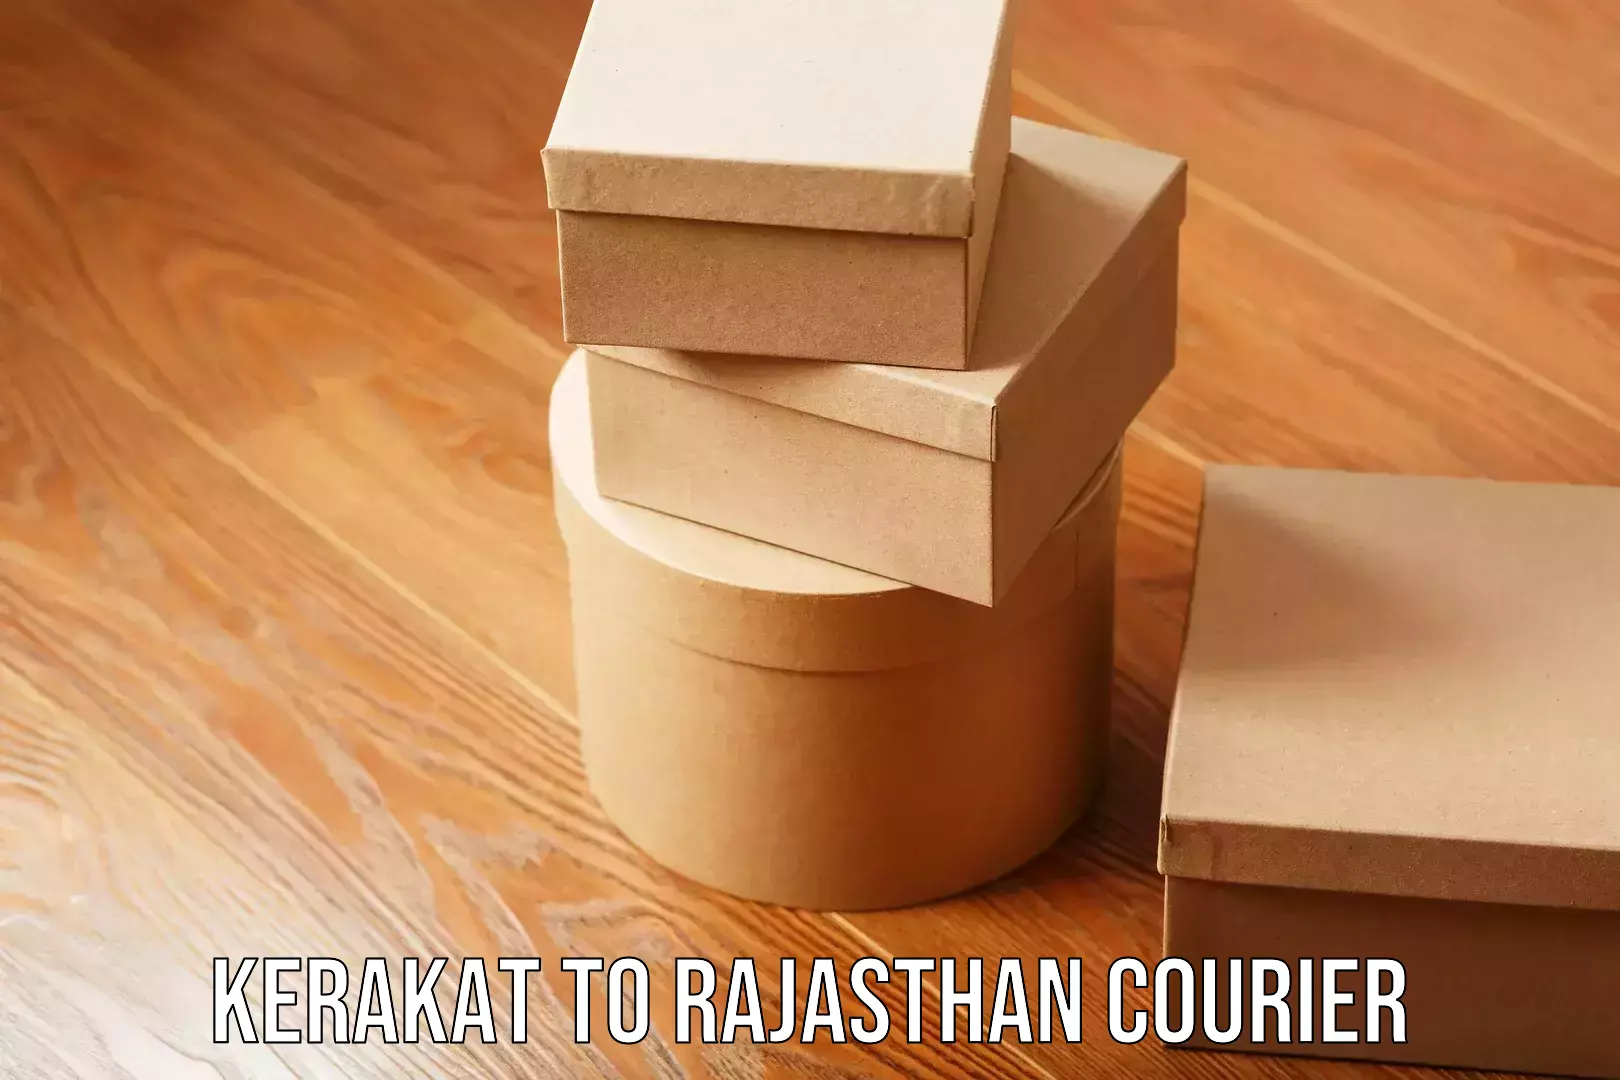 Expert moving and storage Kerakat to Rajasthan